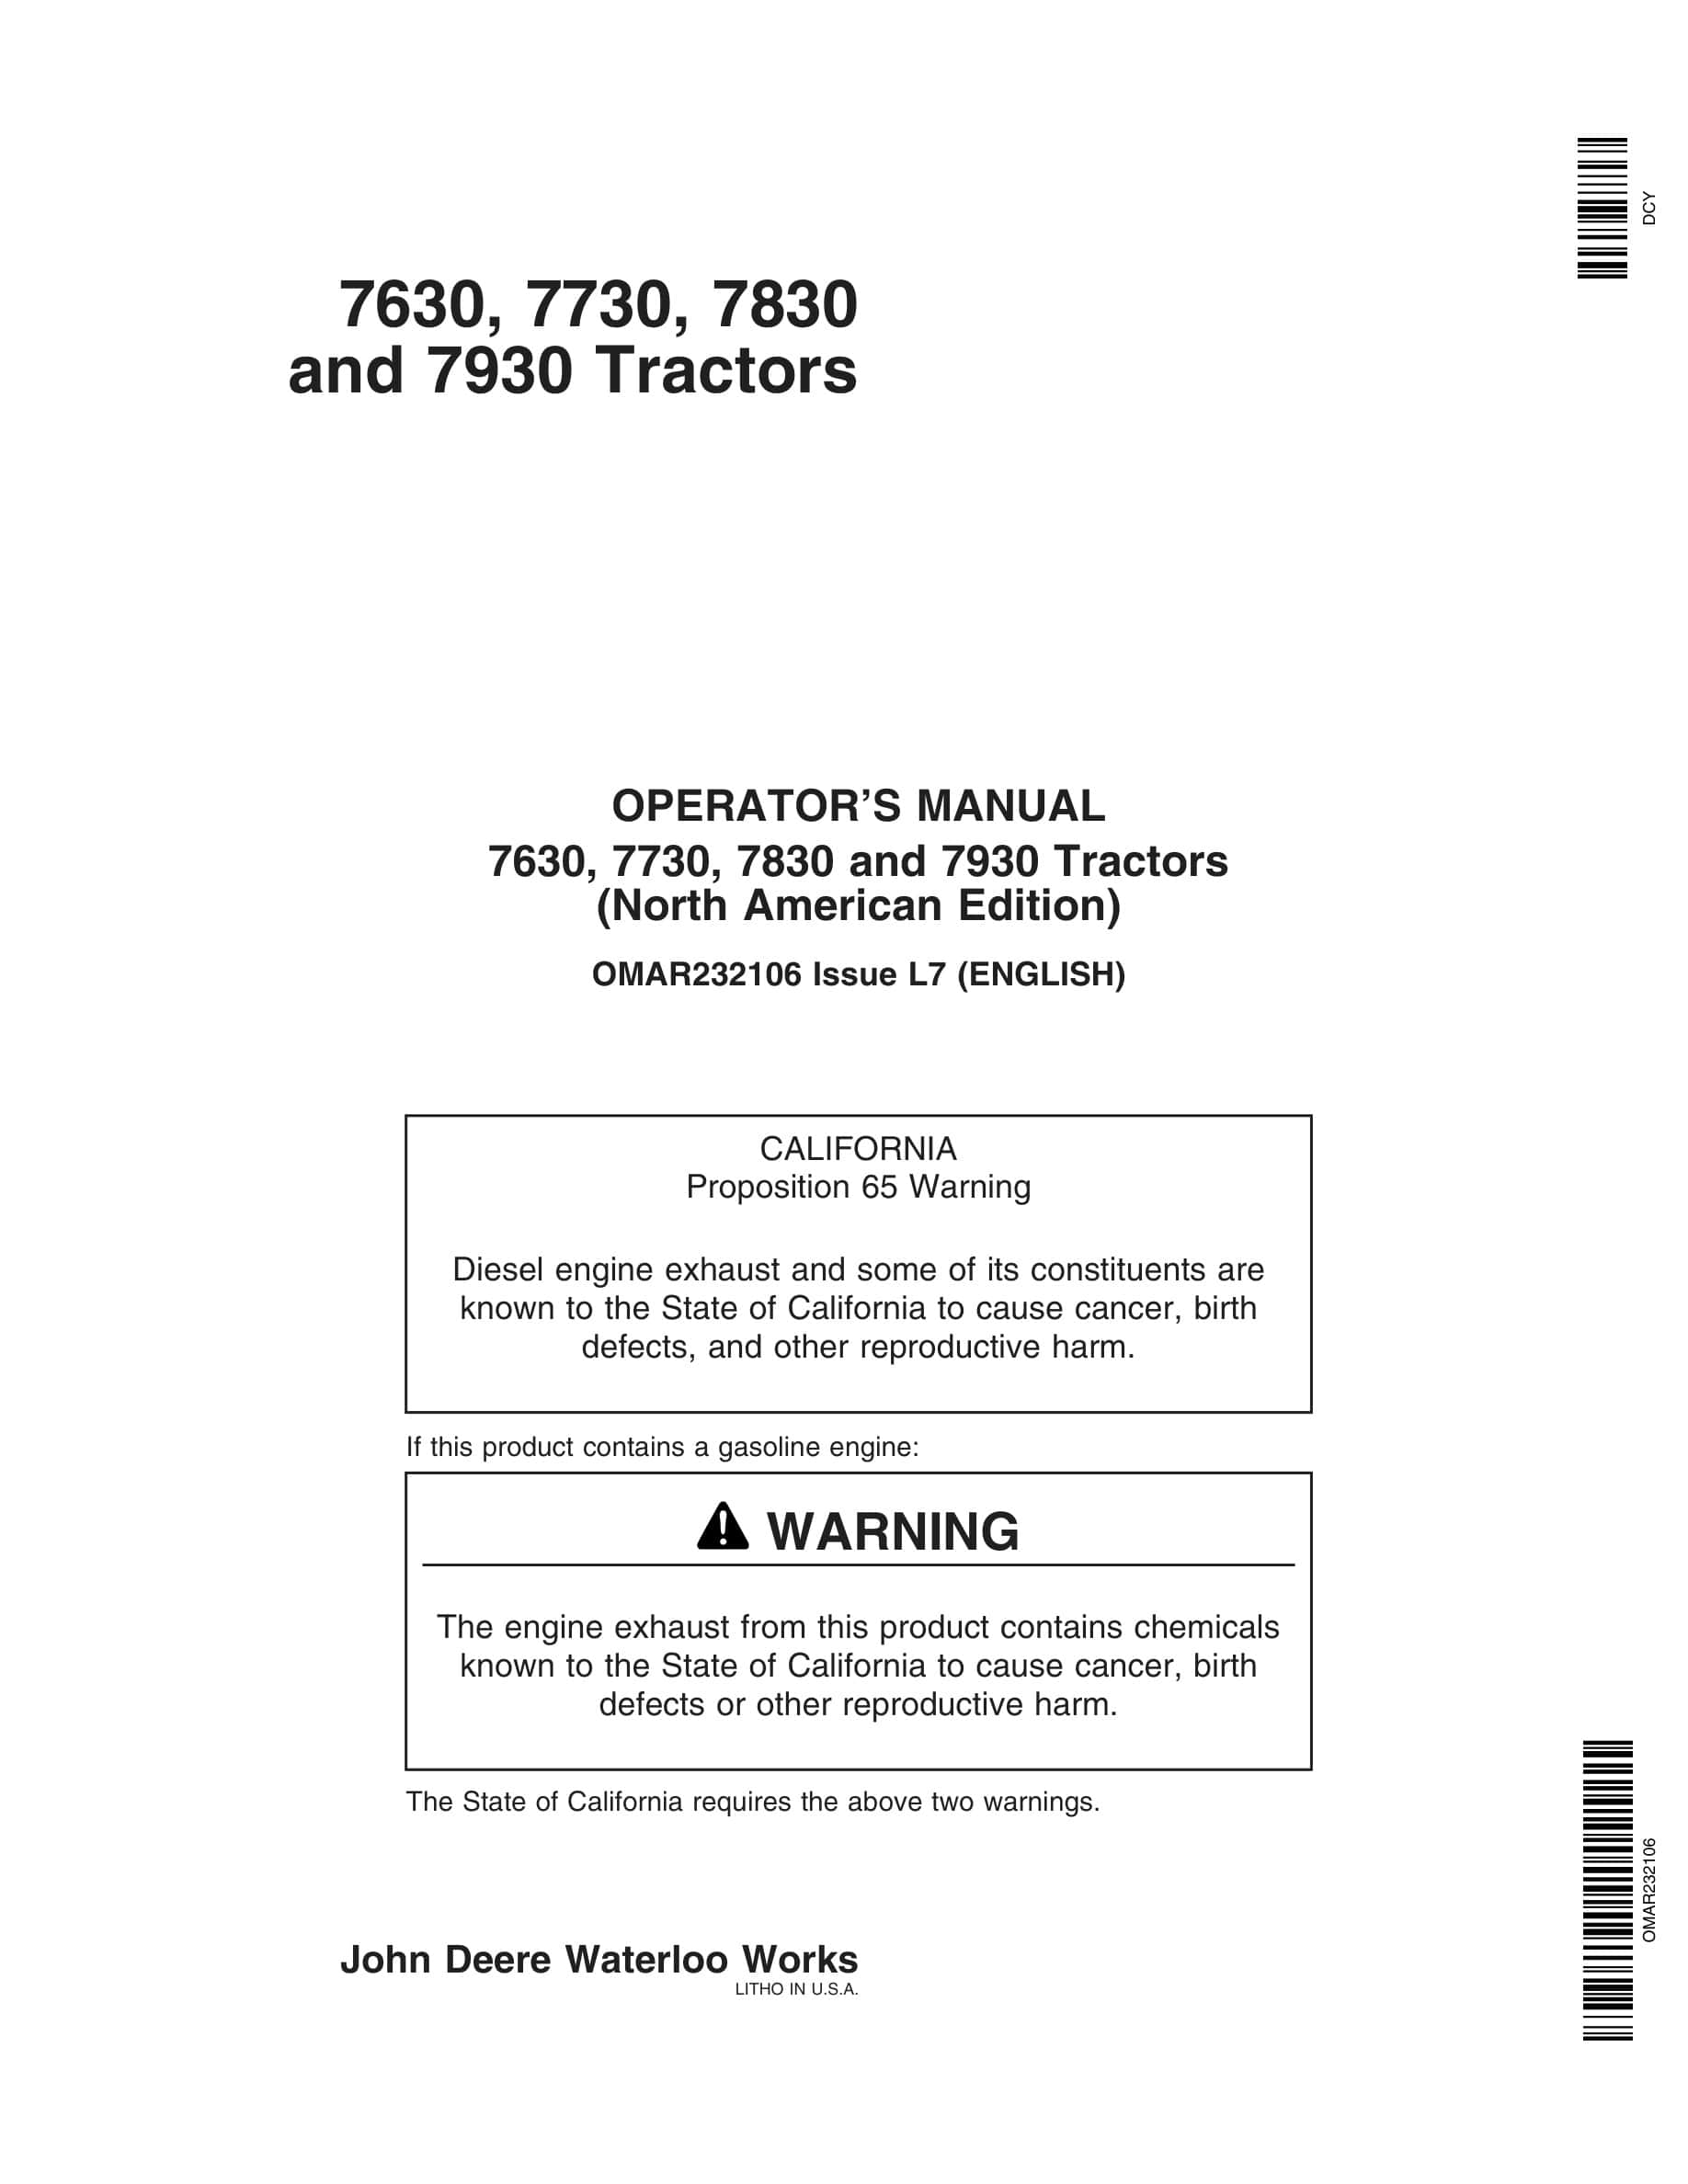 John Deere 7630, 7730, 7830 and 7930 Tractor Operator Manual OMAR232106-1